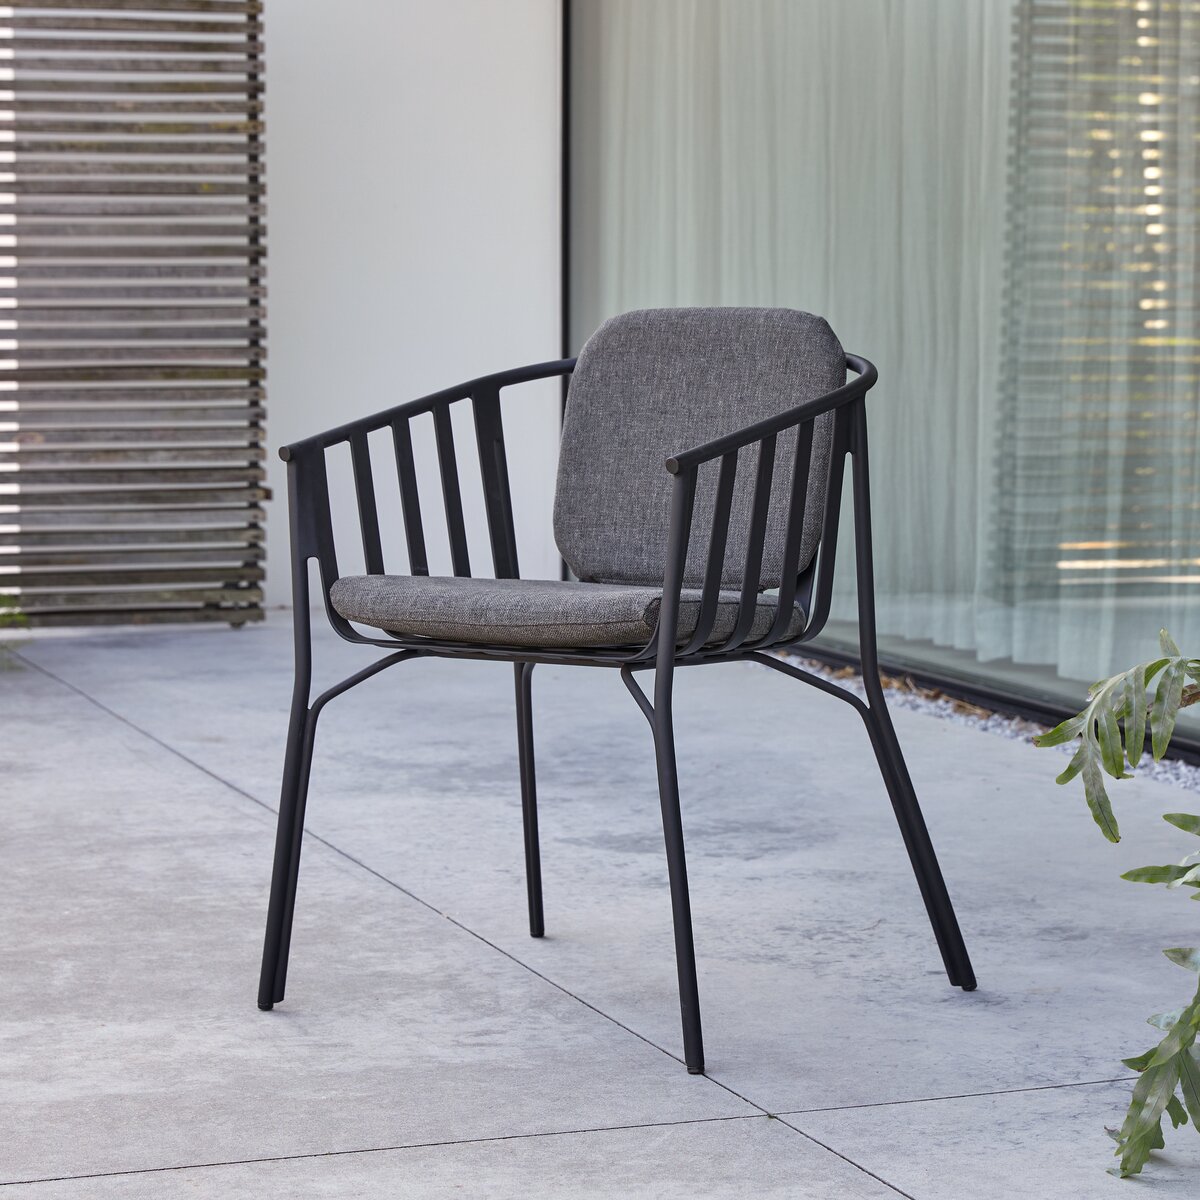 Sedia da giardino in alluminio verniciata di nero - Sedute outdoor -  Tikamoon